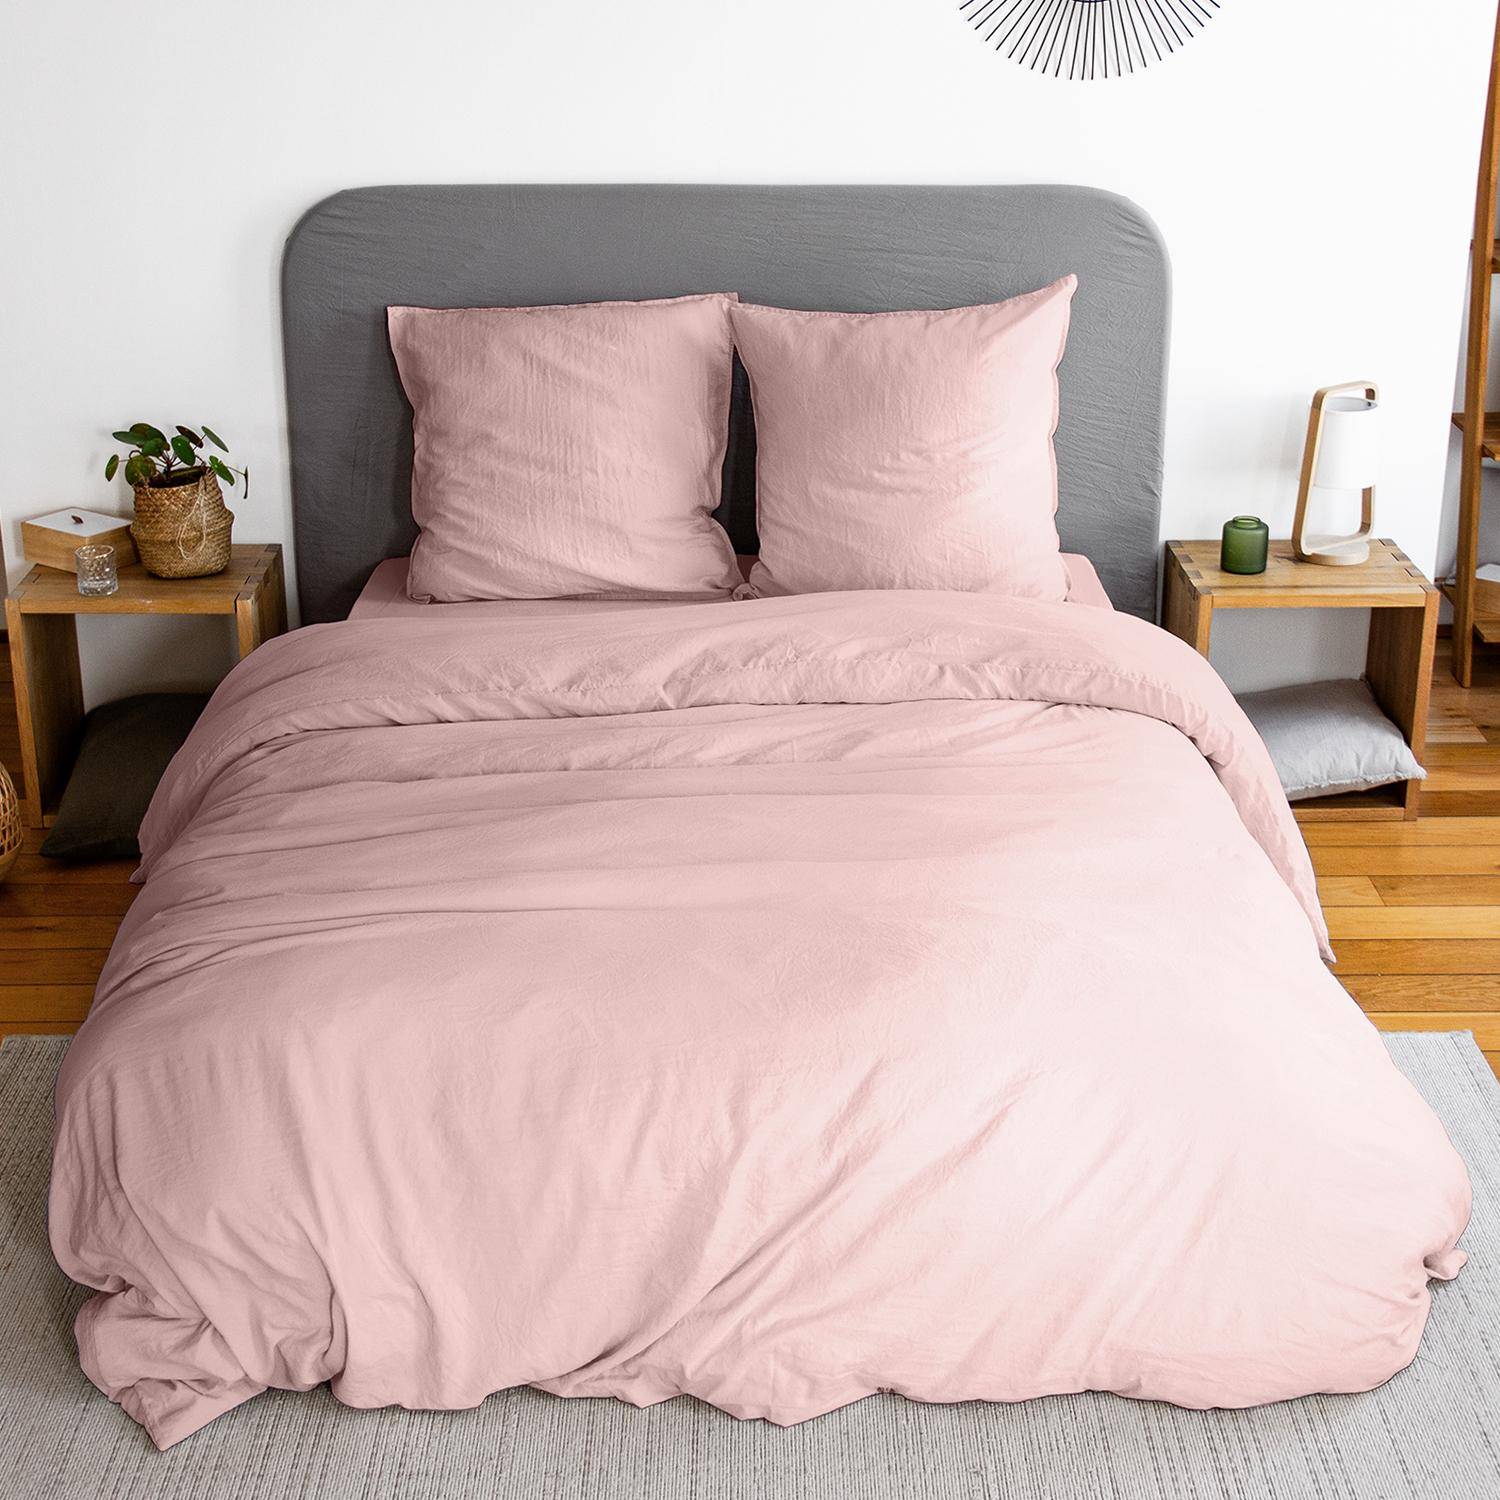 Parure de lit en microfibre lavée, rose poudré, 260 x 240cm pour lit 2 places avec 1 housse de couette et 2 taies d'oreillers,sweeek,Photo1